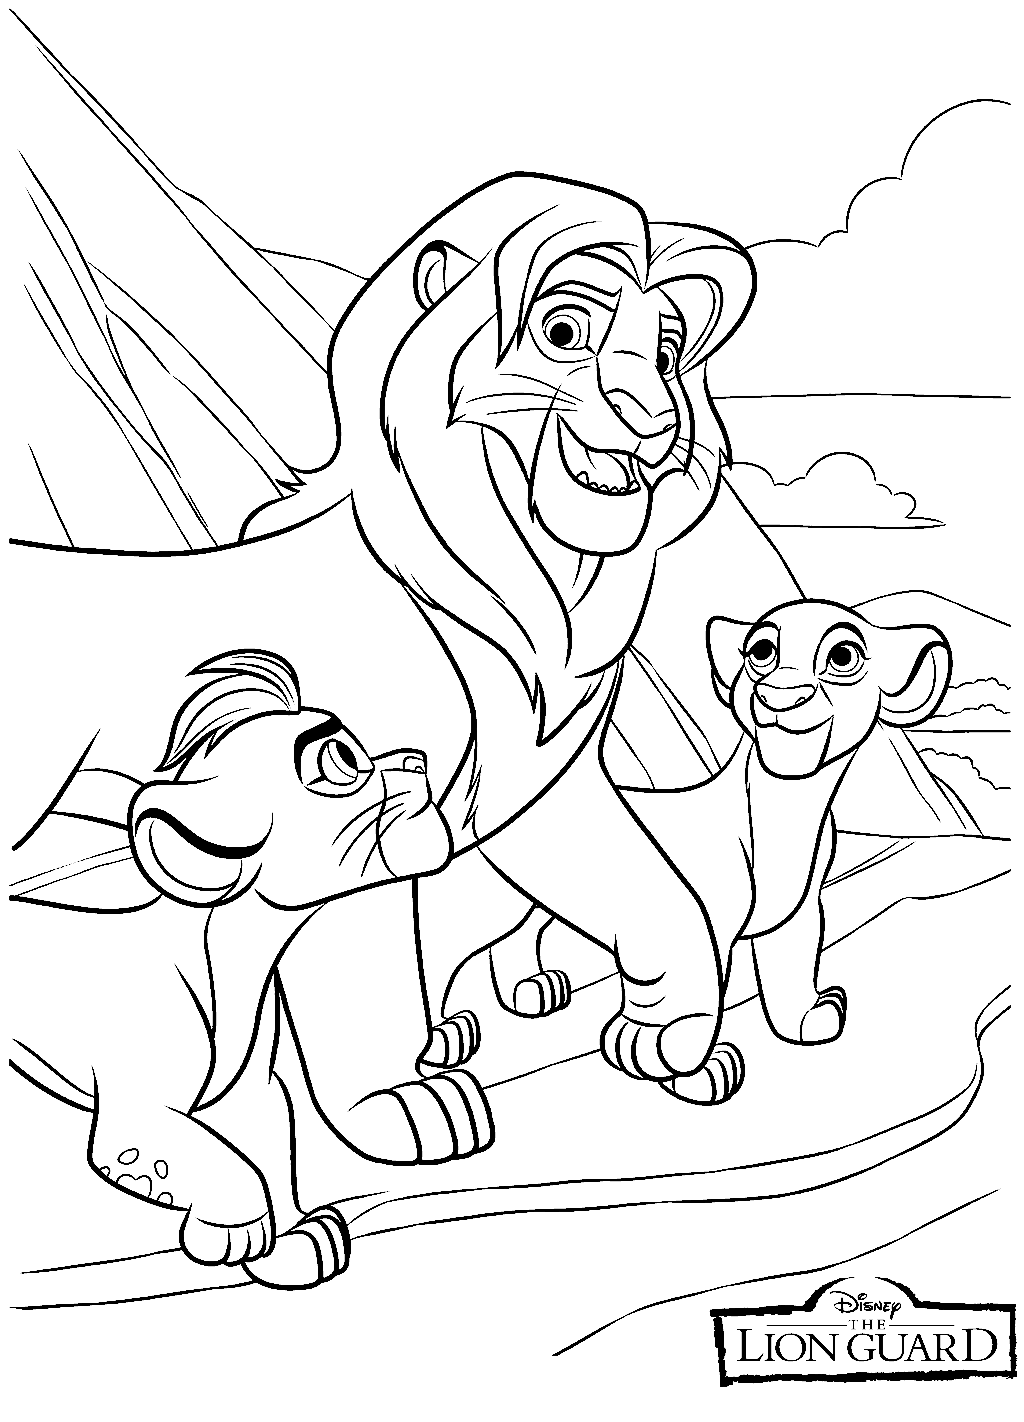 سيمبا وكيارا وكيون من فريق Lion Guard